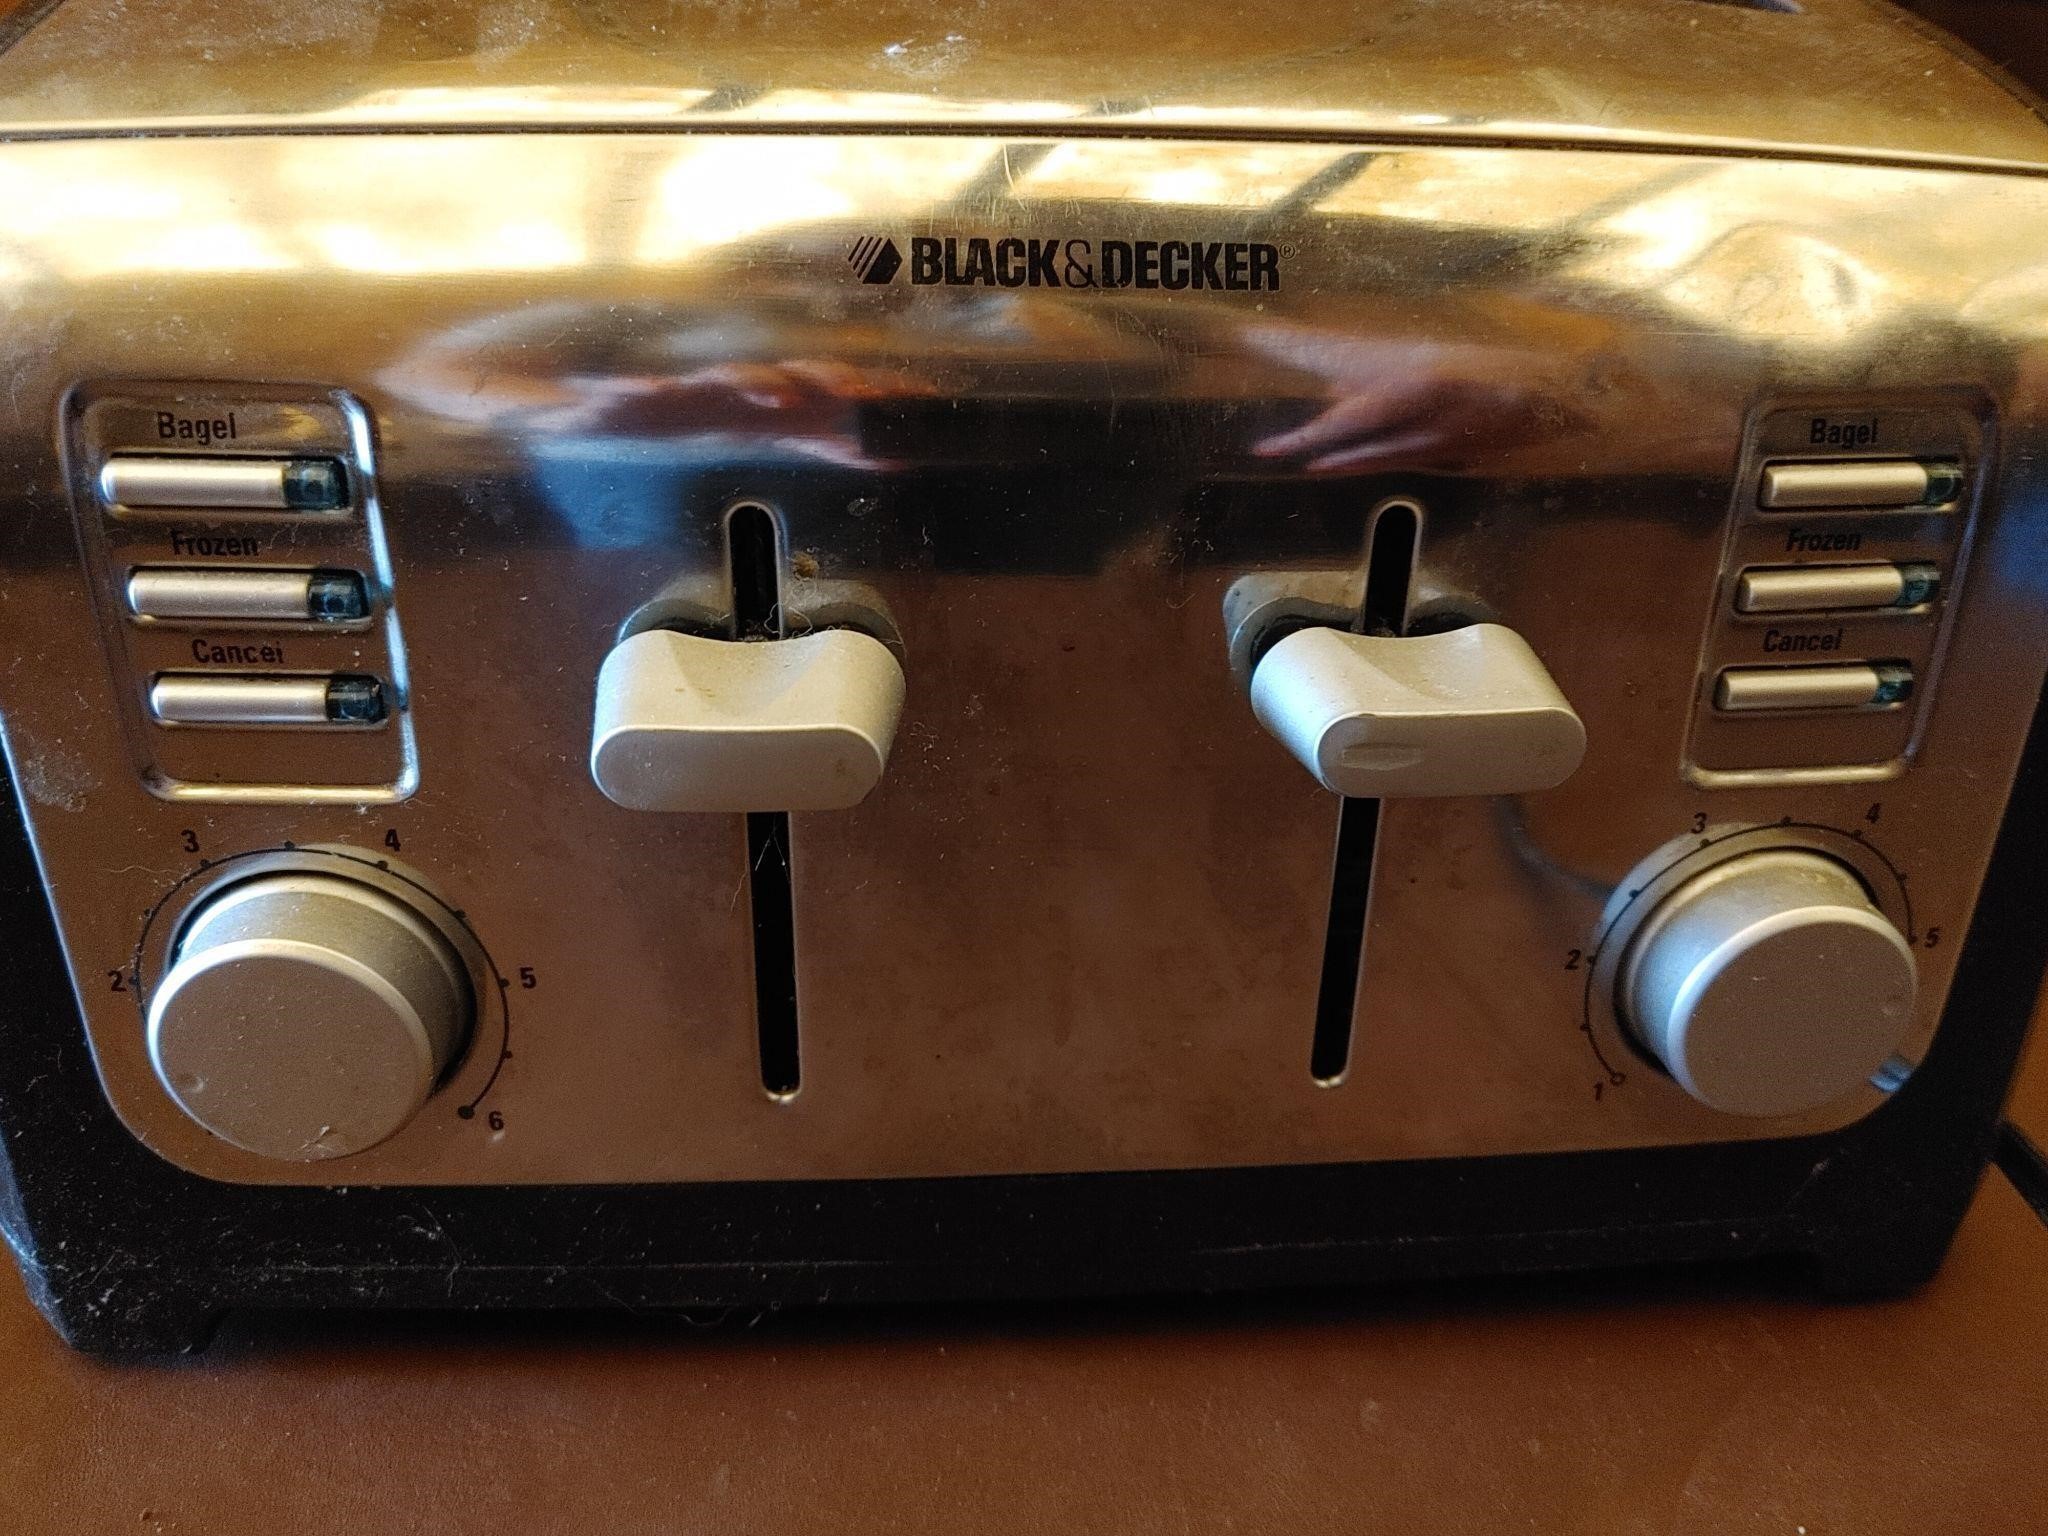 Black & decker 4 slice Toaster